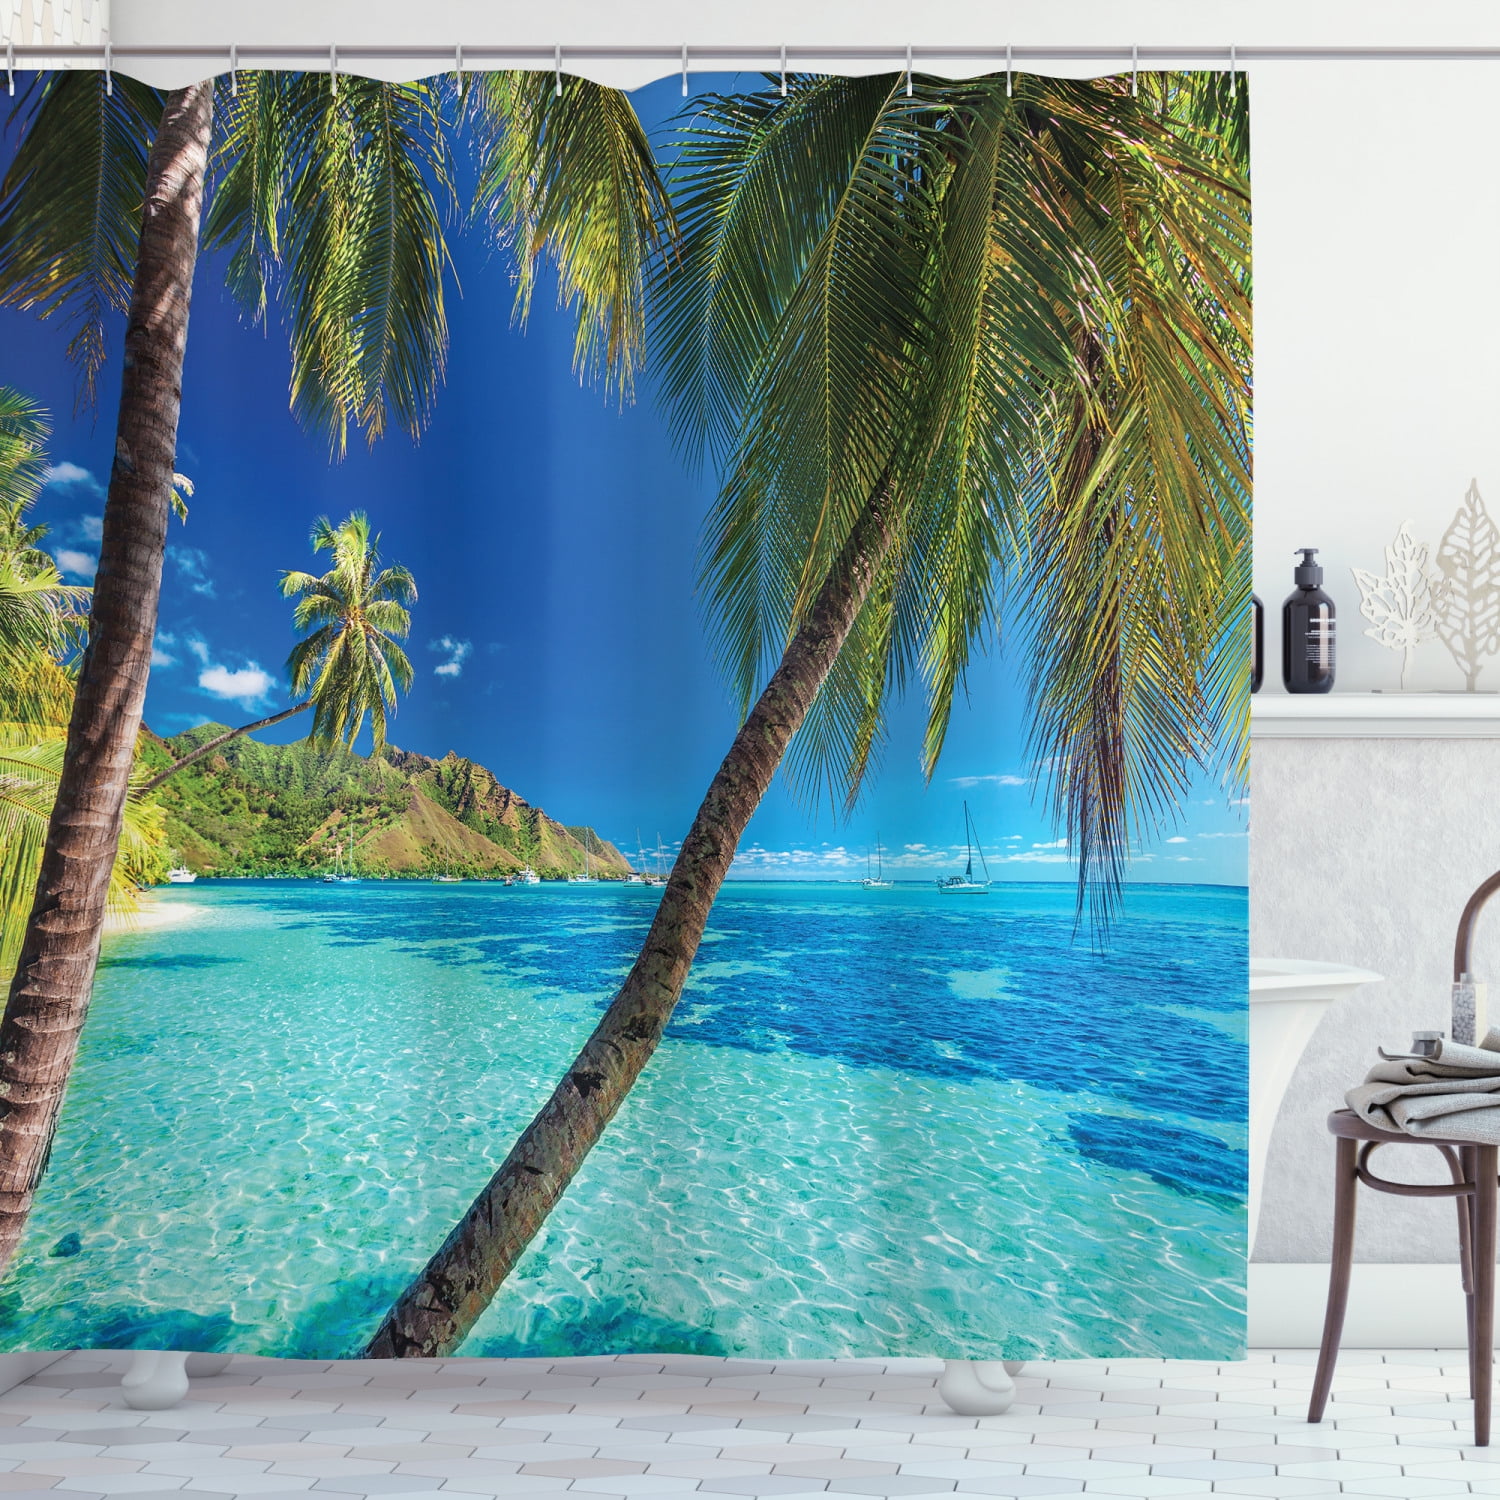 Funny Skull Shower Curtain Tropical Ocean Beach Palm Tree For Bathroom Decor 